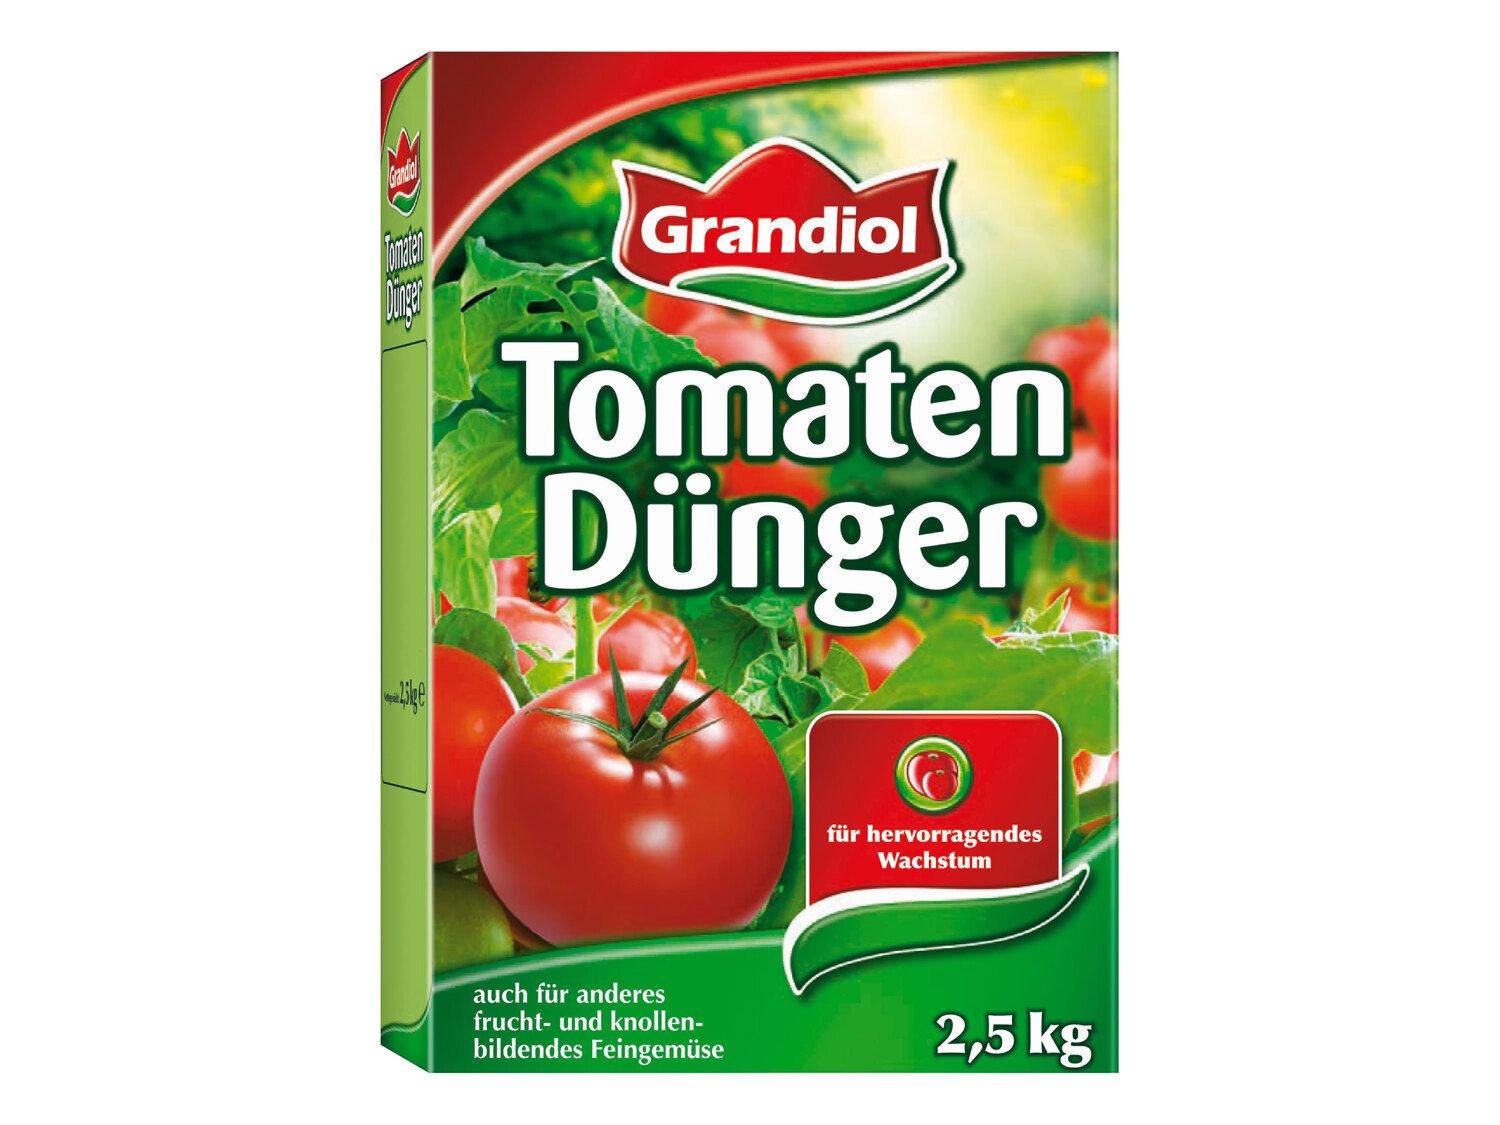 Tomatendünger Grandiol - Lidl Deutschland